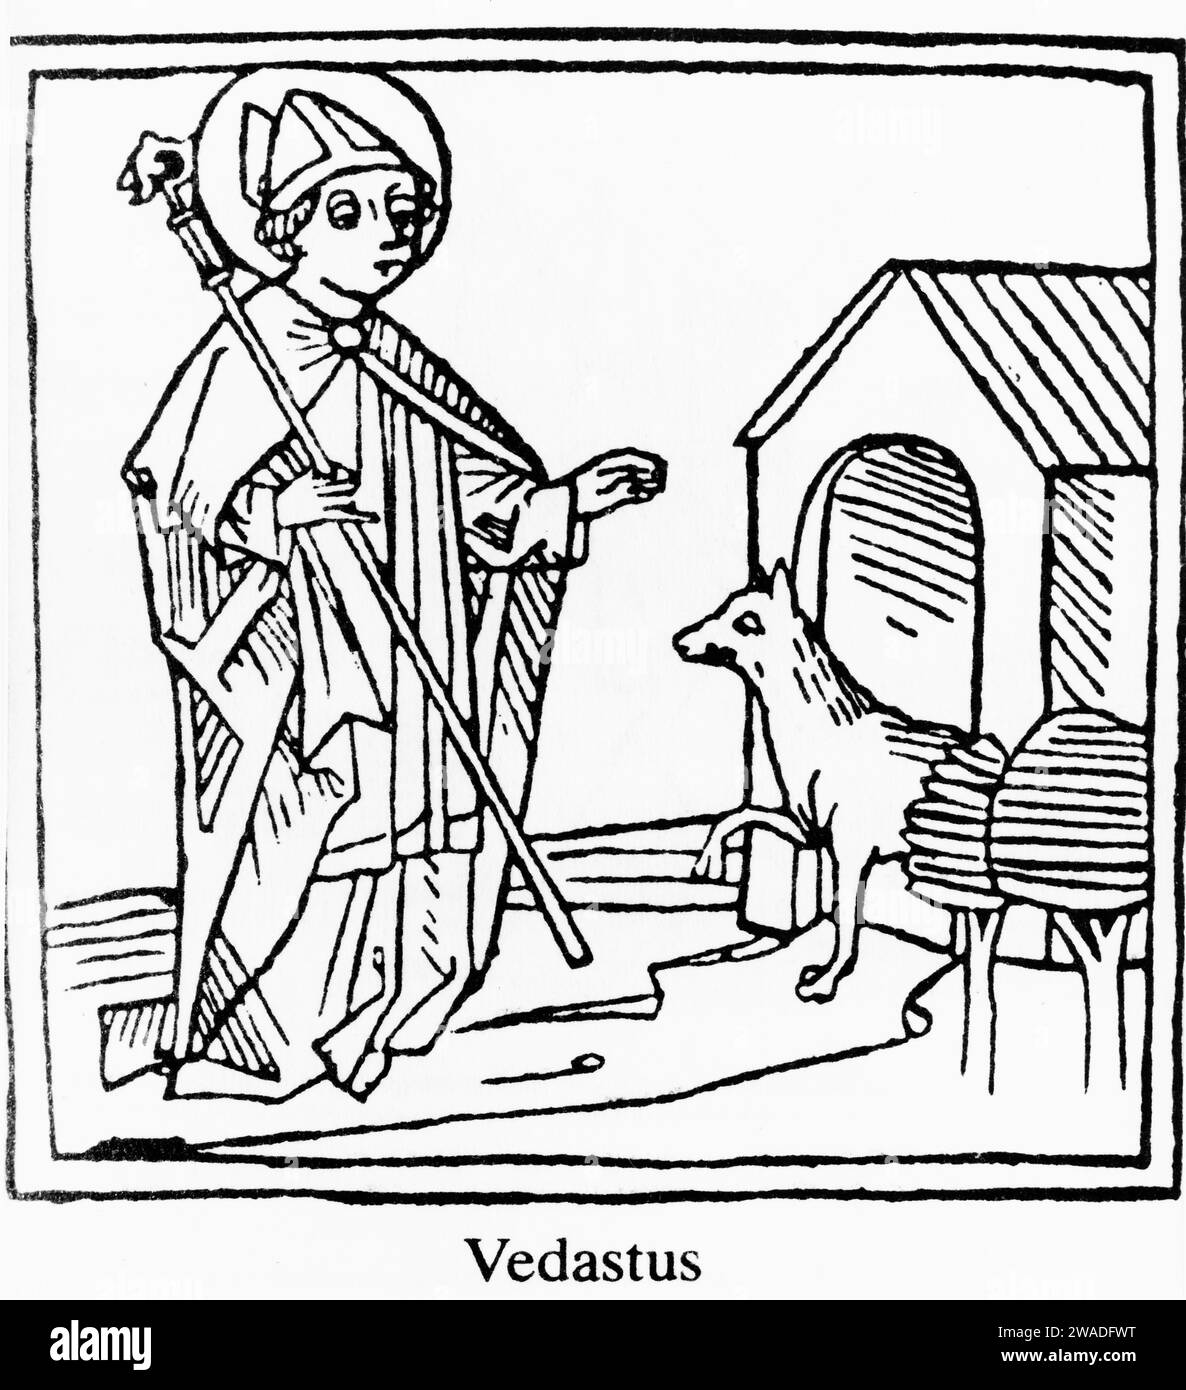 Vedastus (Vaast. Gaston), primo vescovo di Arras, taglio di legno medievale Foto Stock